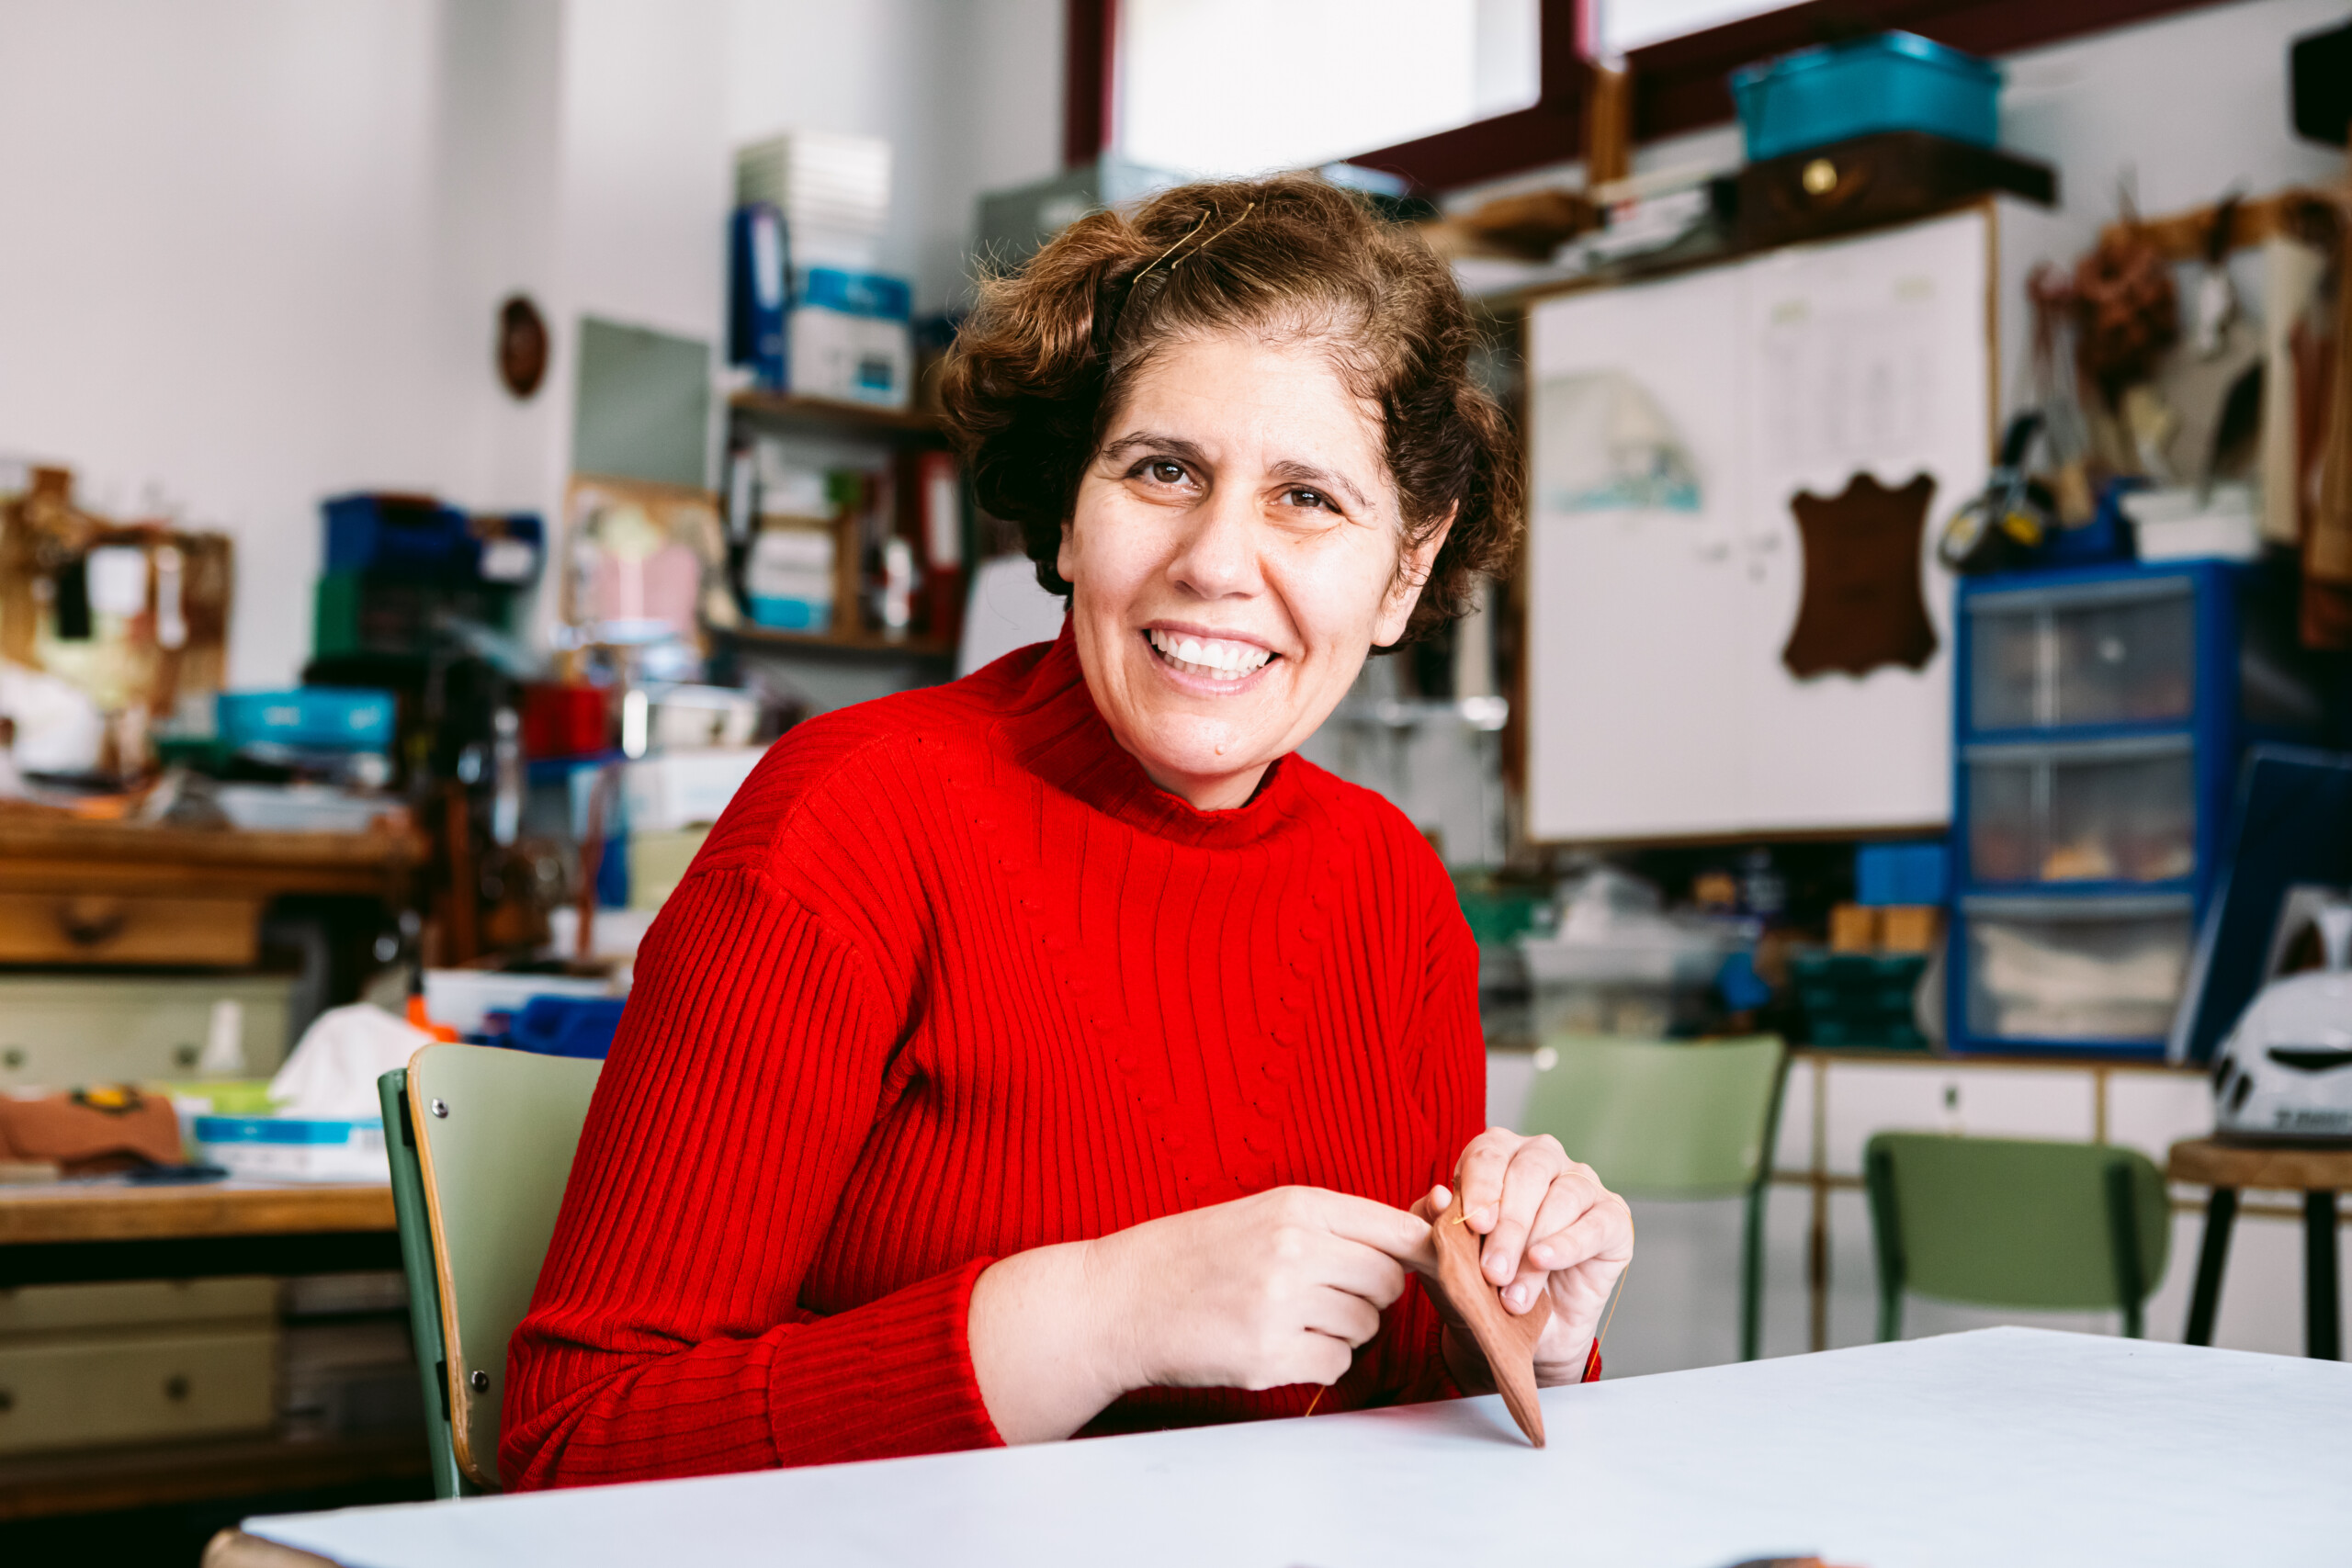 Mujer adulta trabajando sentada en un taller, cosiendo una pieza de cuero, y sonriendo a la cámara